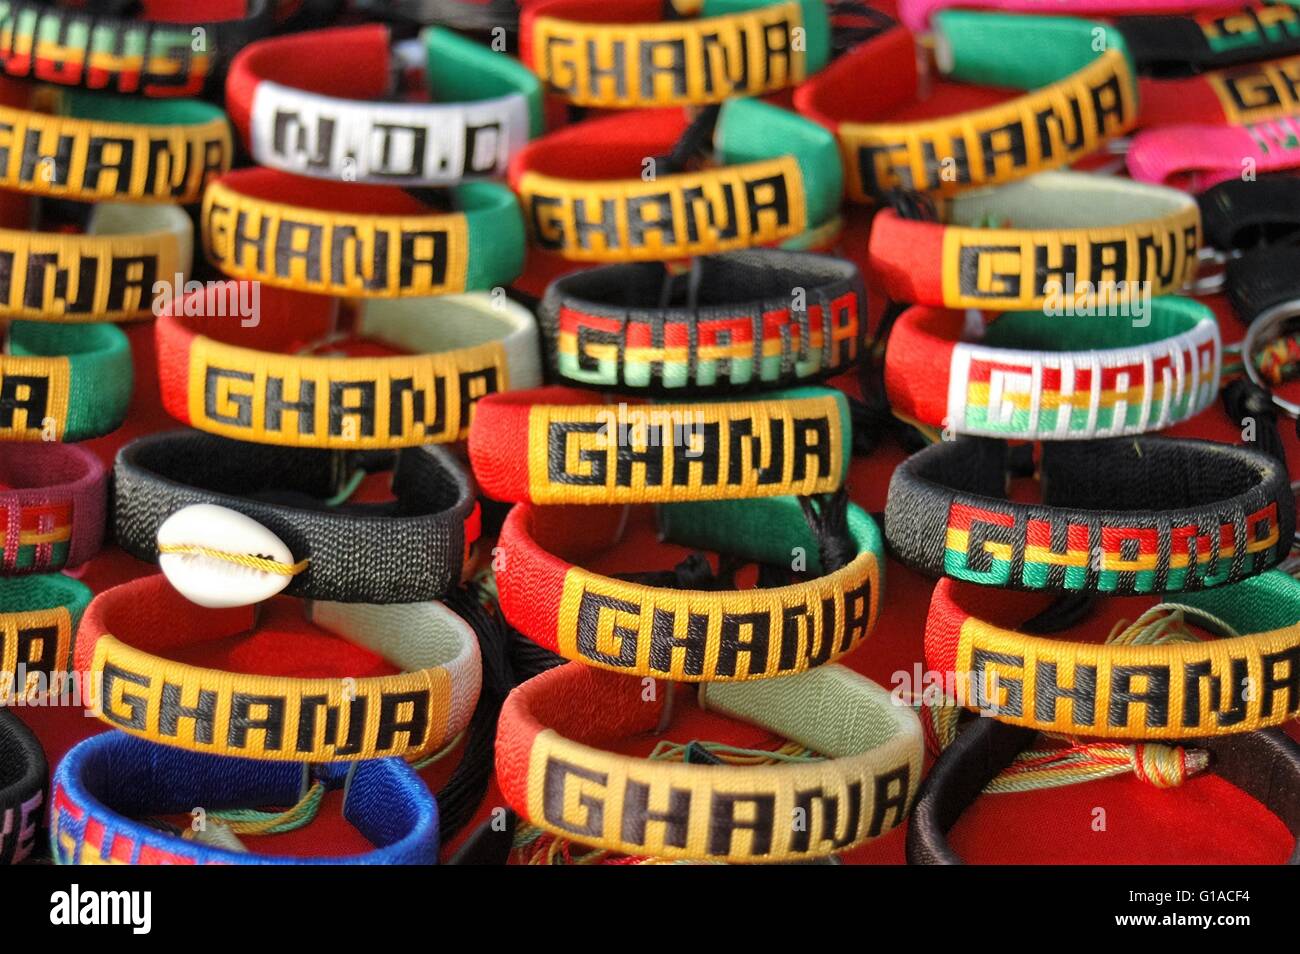 Ghana Souvenir - Farben des Ghana - Flagge von Ghana und der NDC-Partei von Ghana. Stockfoto